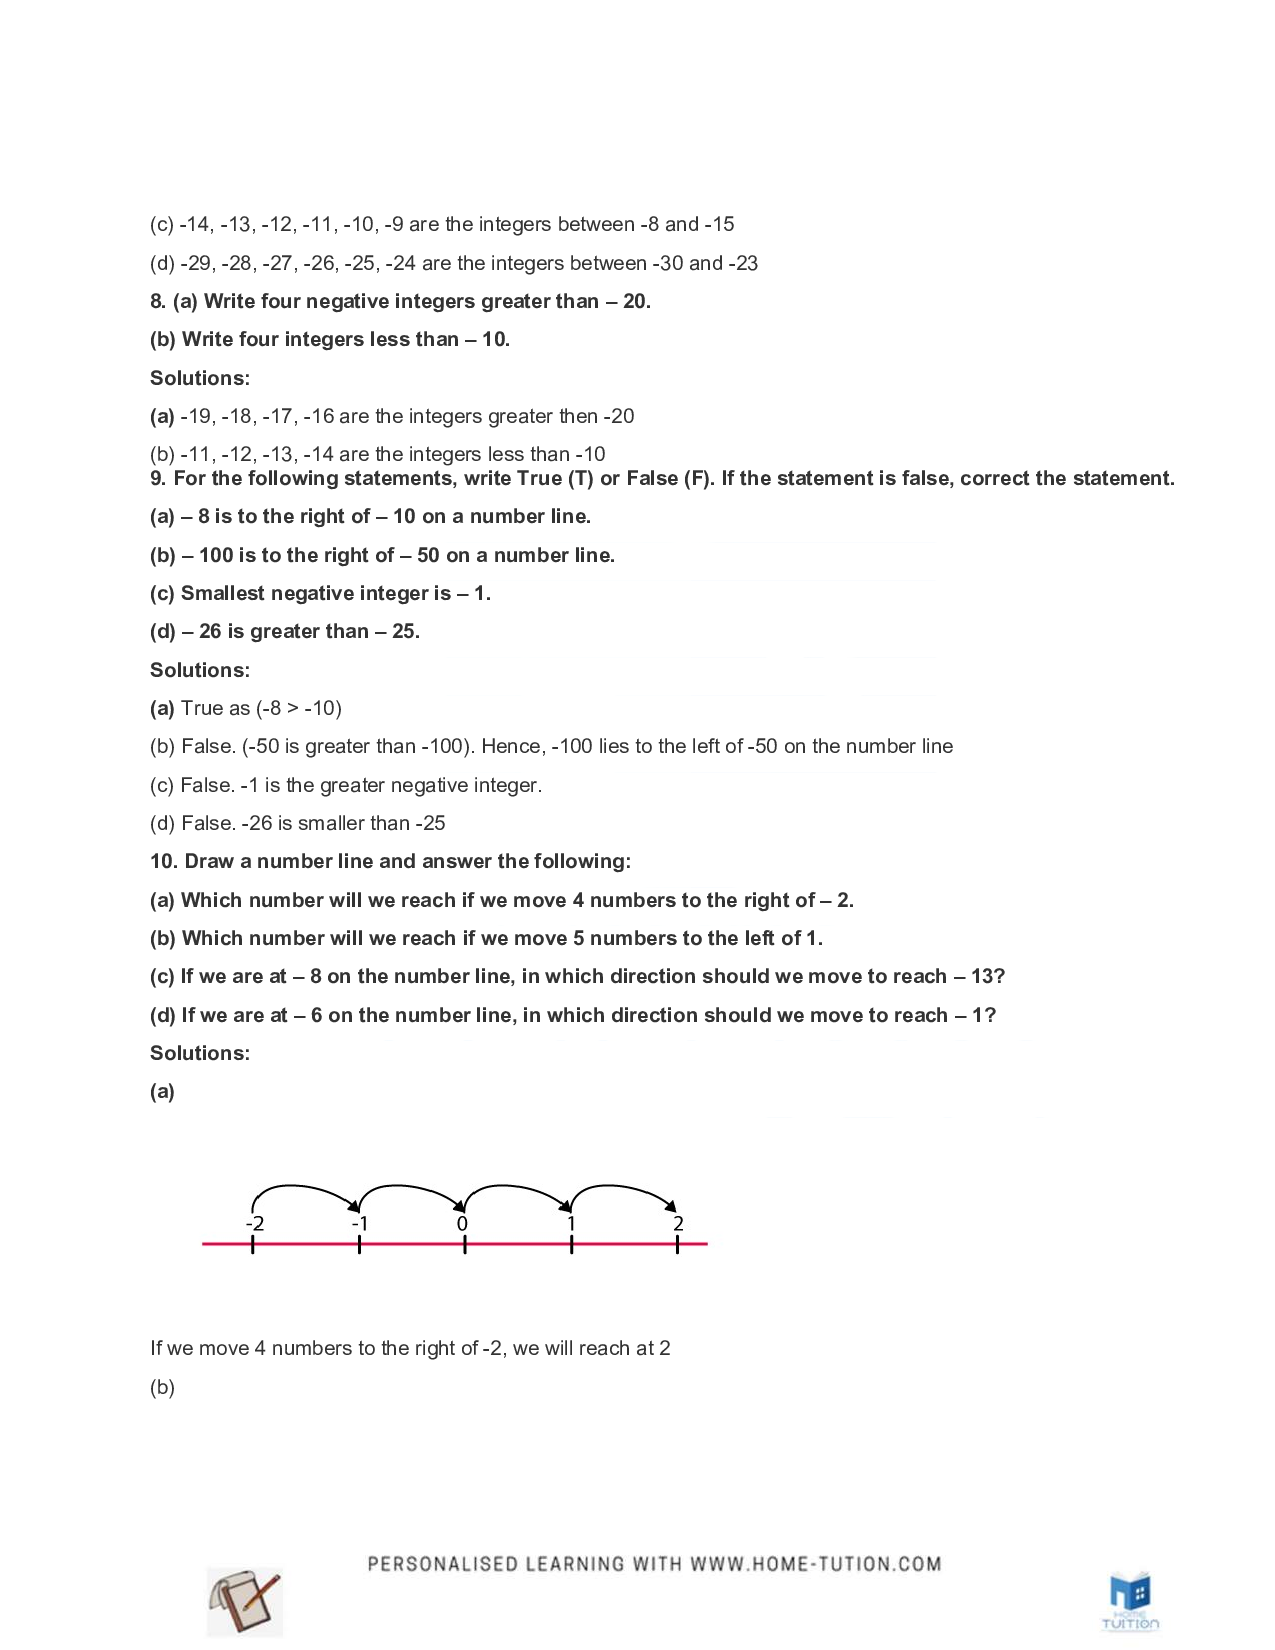 Class 6 Maths Chapter 6 Integers